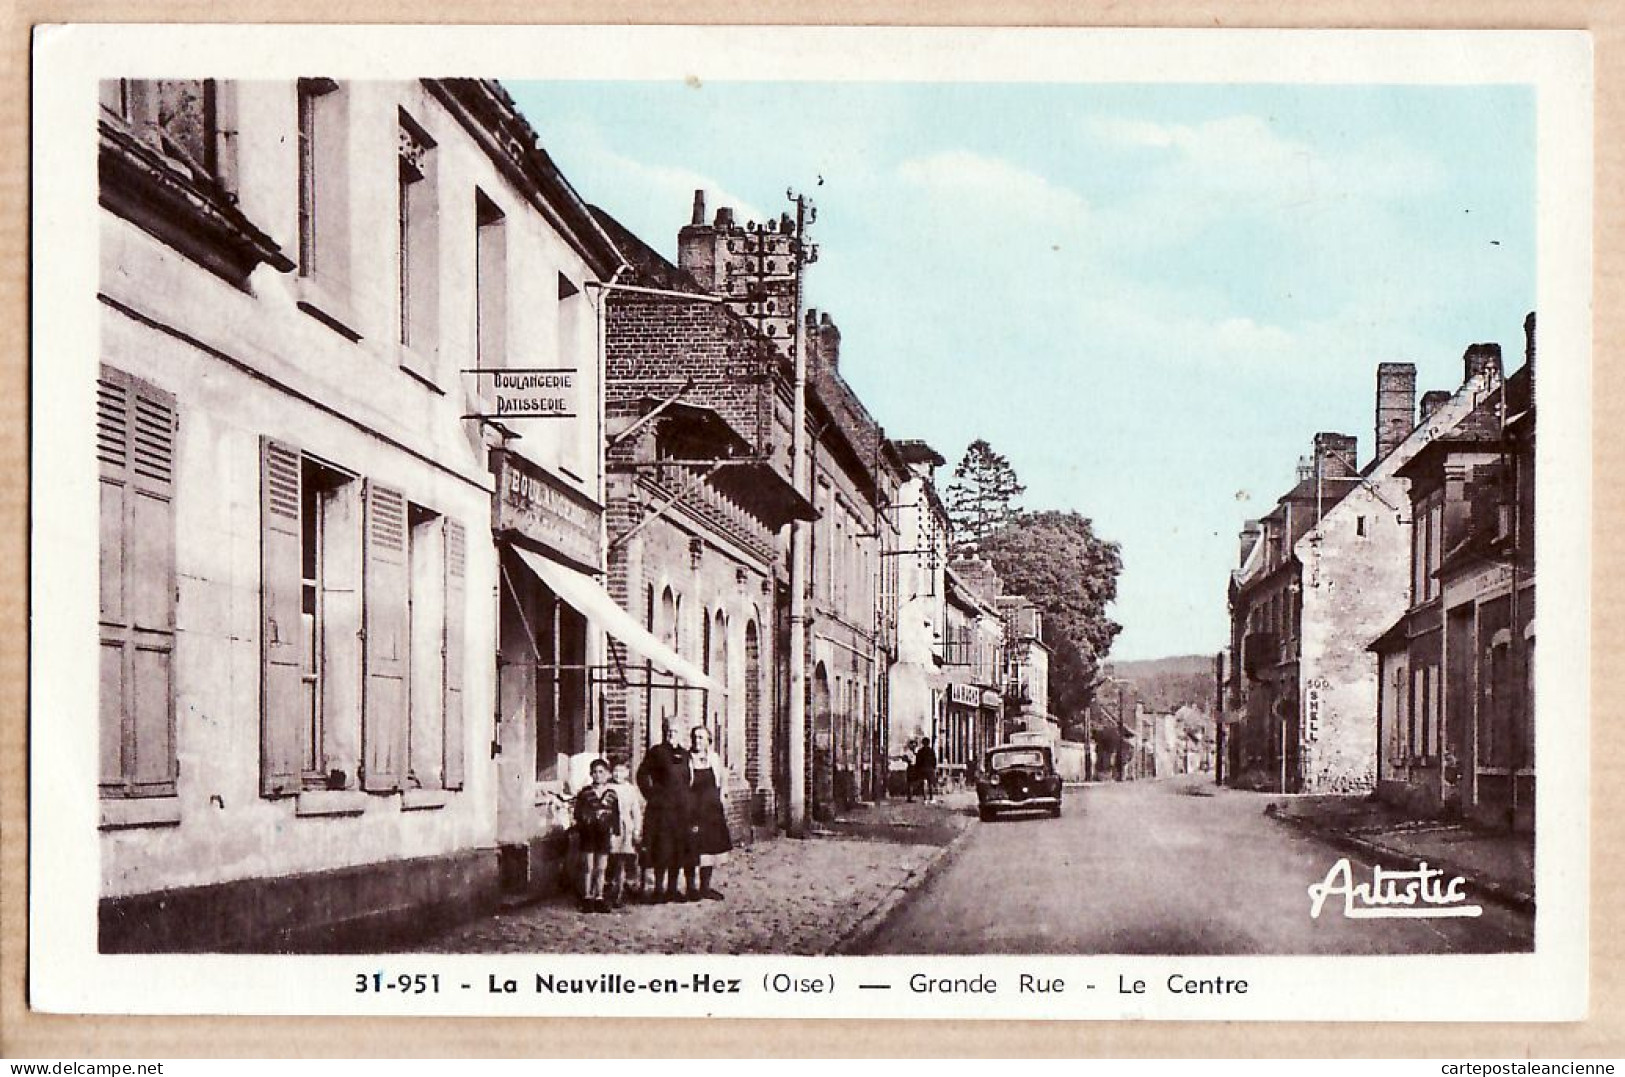 23351 / LA NEUVILLE-en-HEZ Oise Grande Rue Le Centre Traction Citroen Boulangerie épicerie Ruche 1956 ARTISTIC 31-95 - Boran-sur-Oise